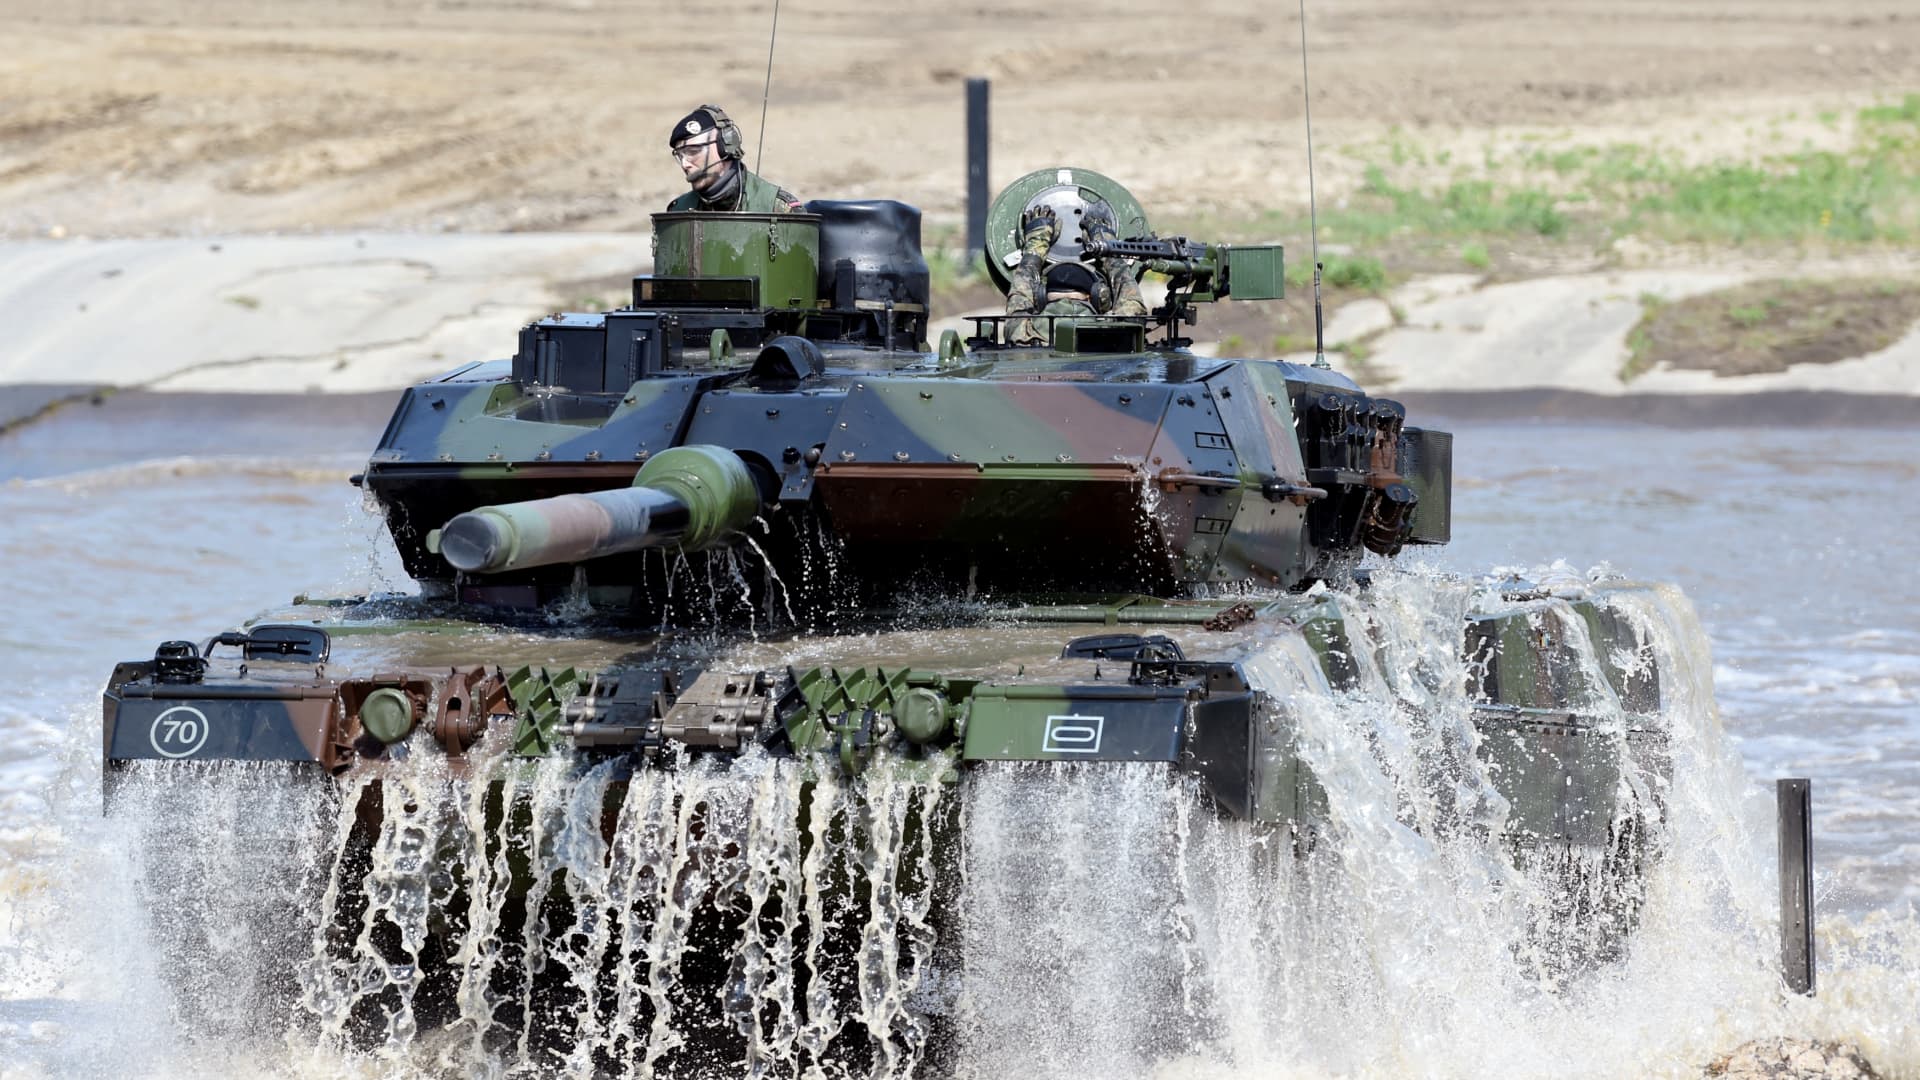 A Leopard 2 tank in Germany in 2019.